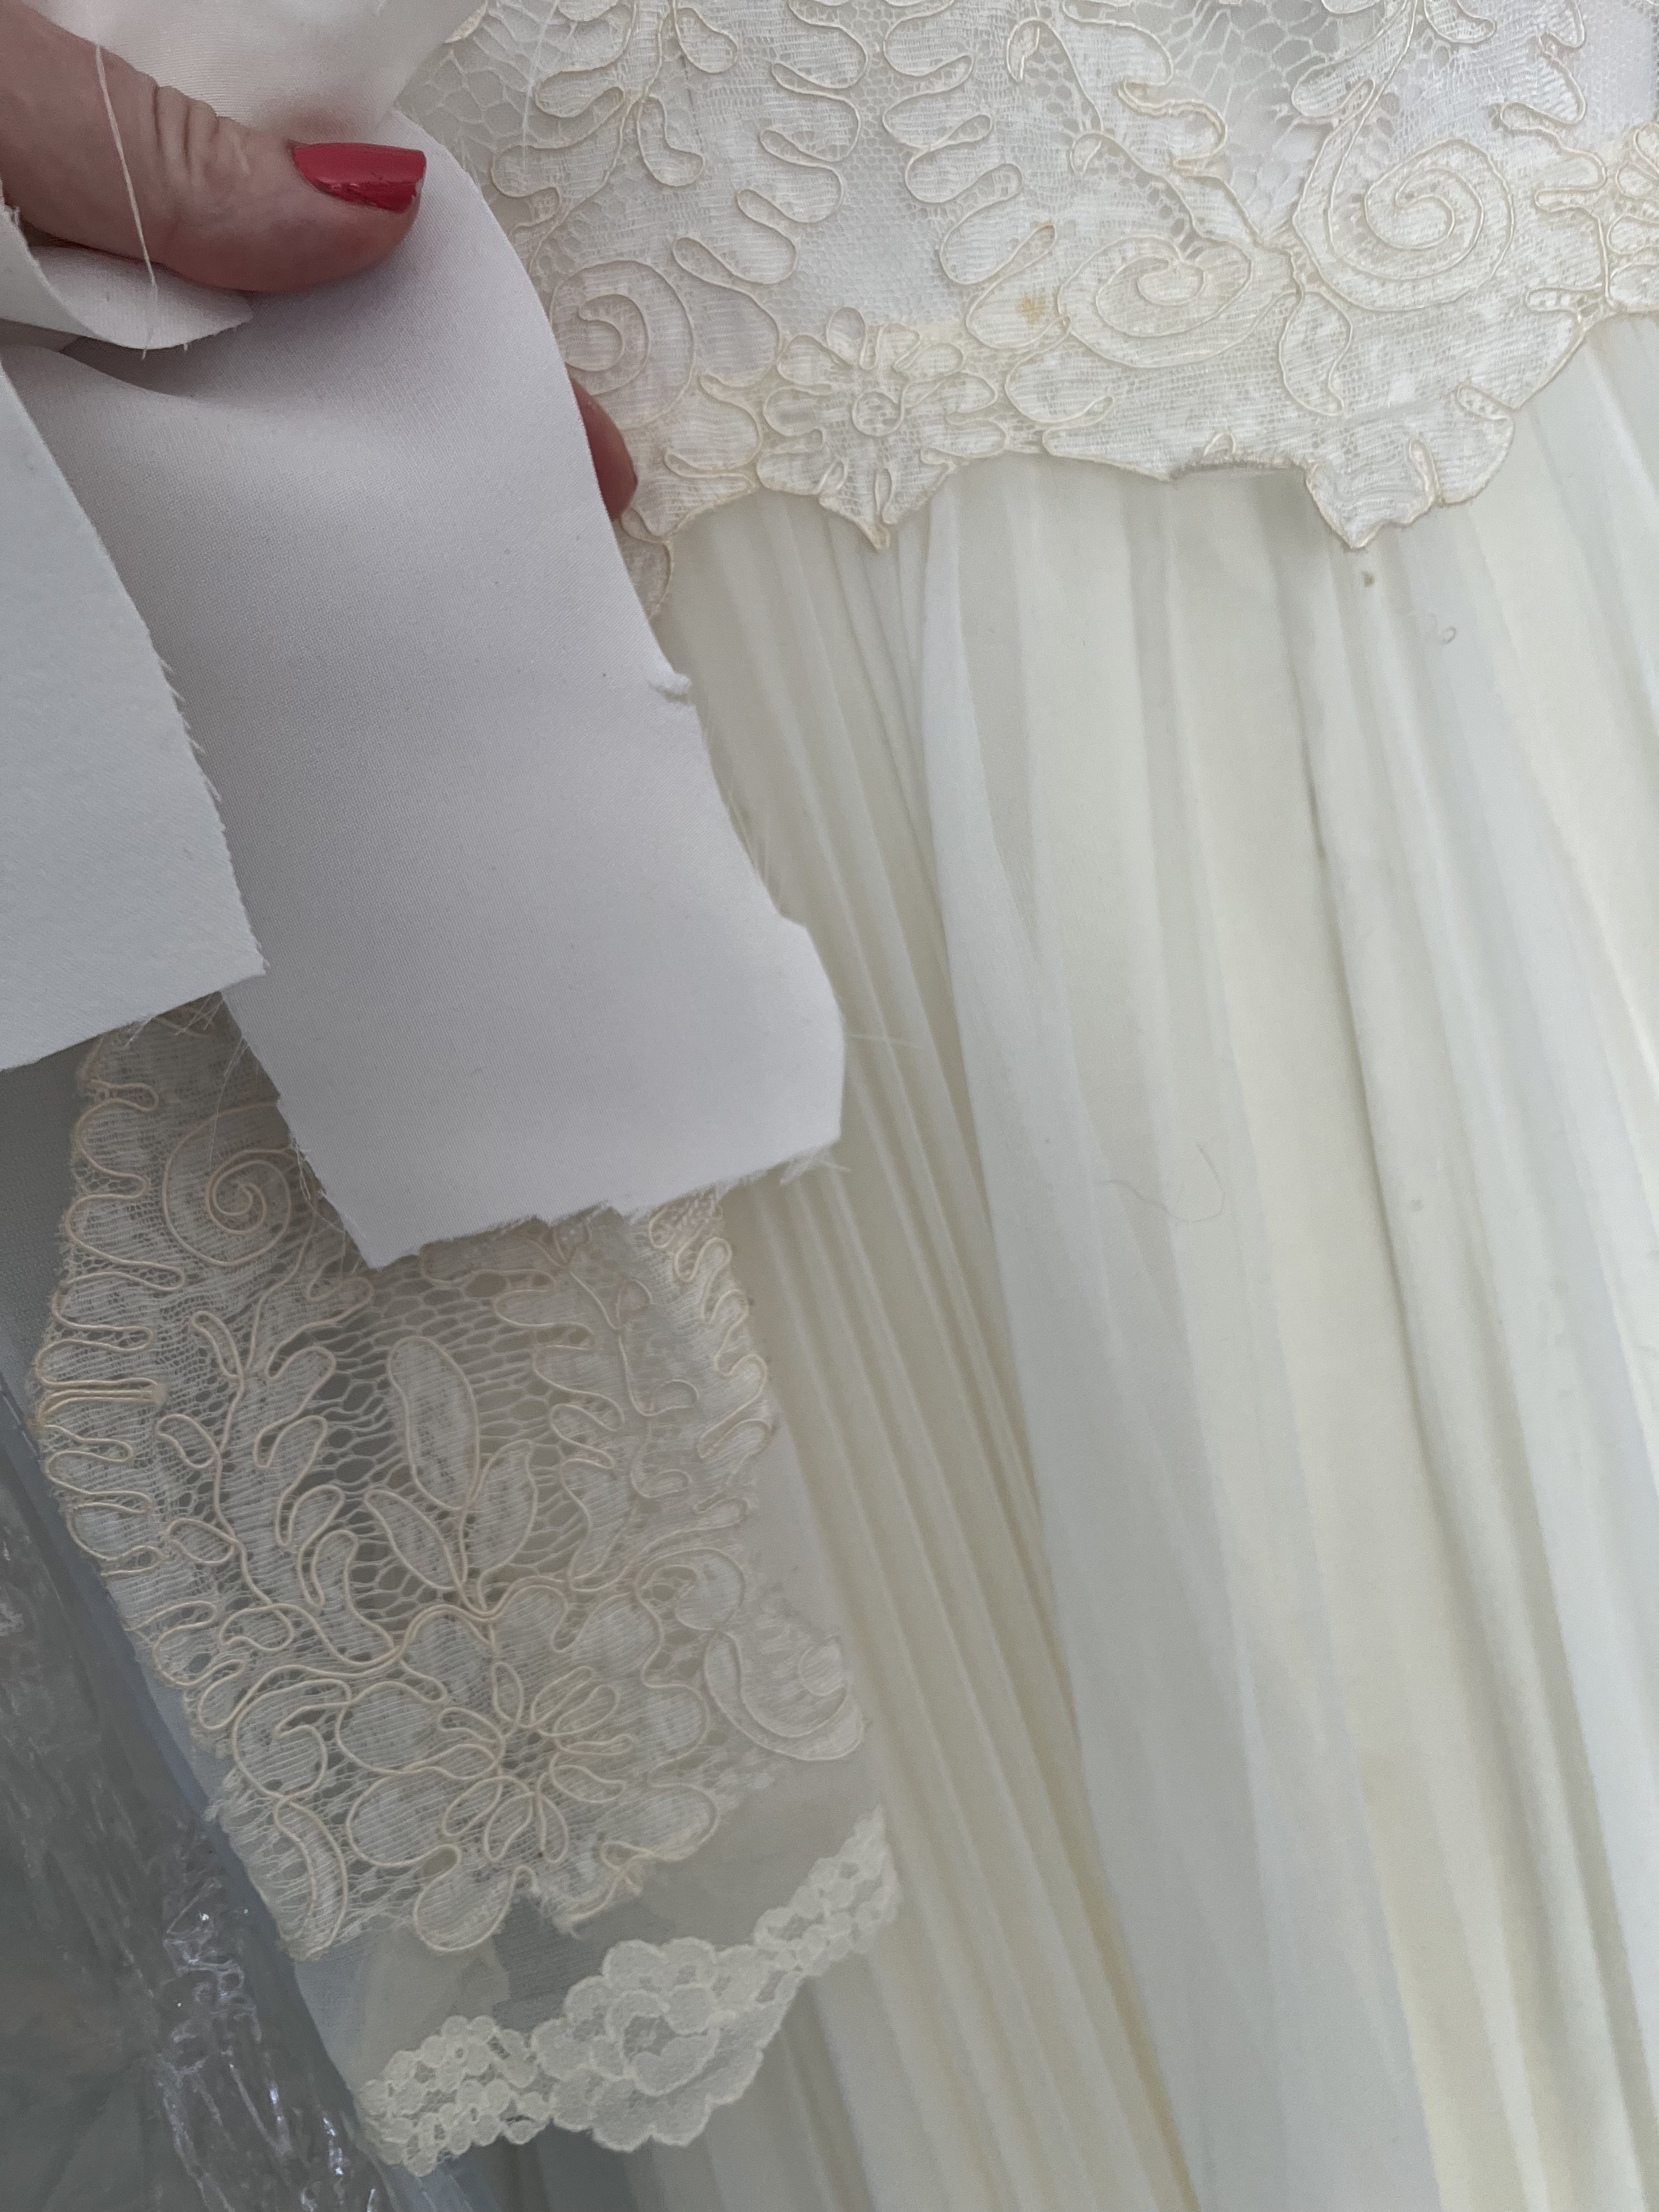 Reimagining a retro wedding gown.jpg